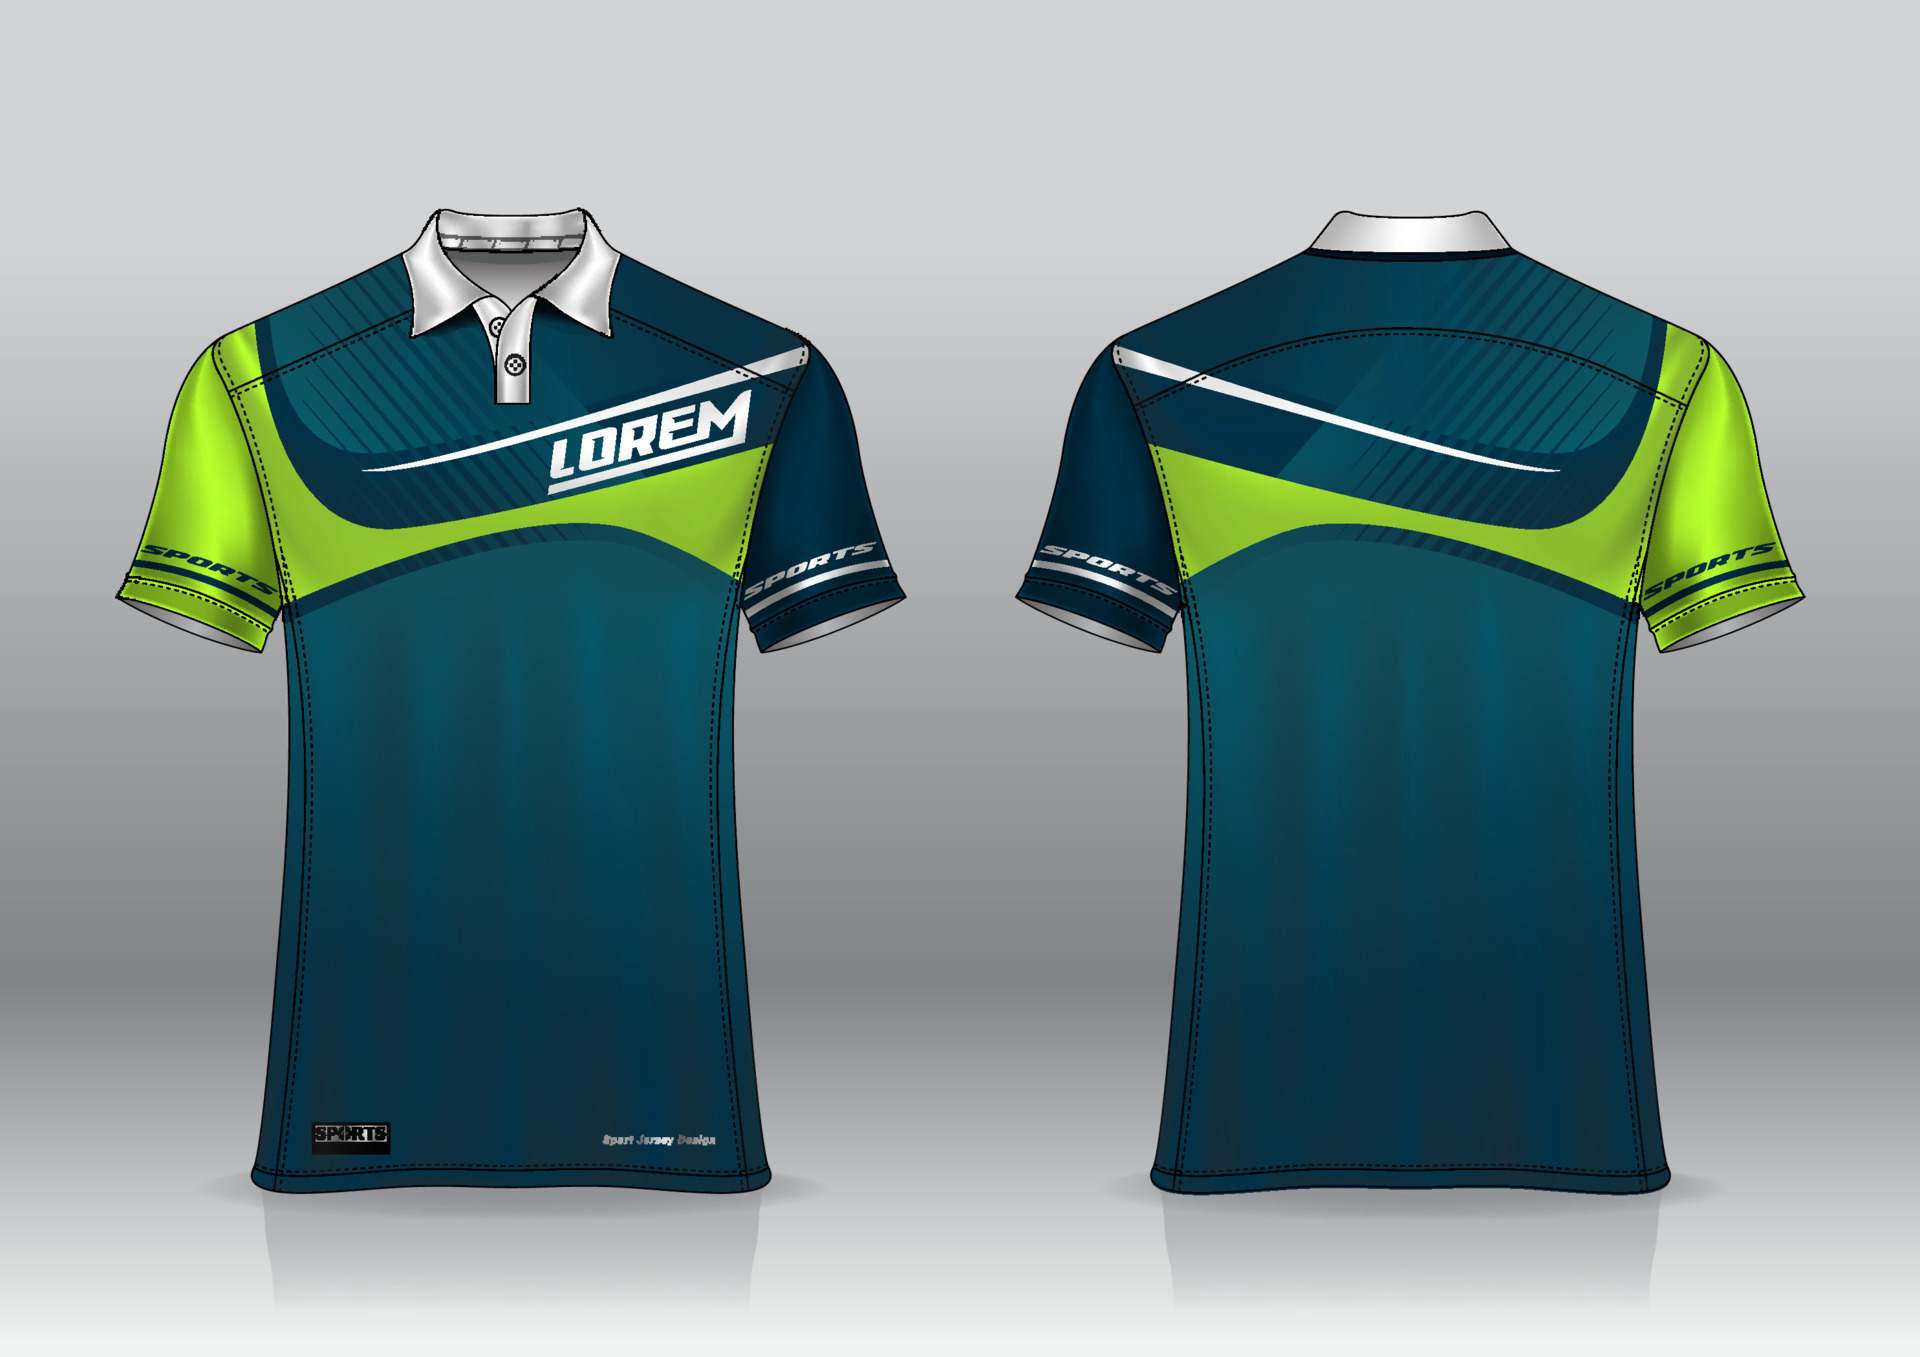 polo shirt uniform design for outdoor sports 8028547 Vector Art at Vecteezy